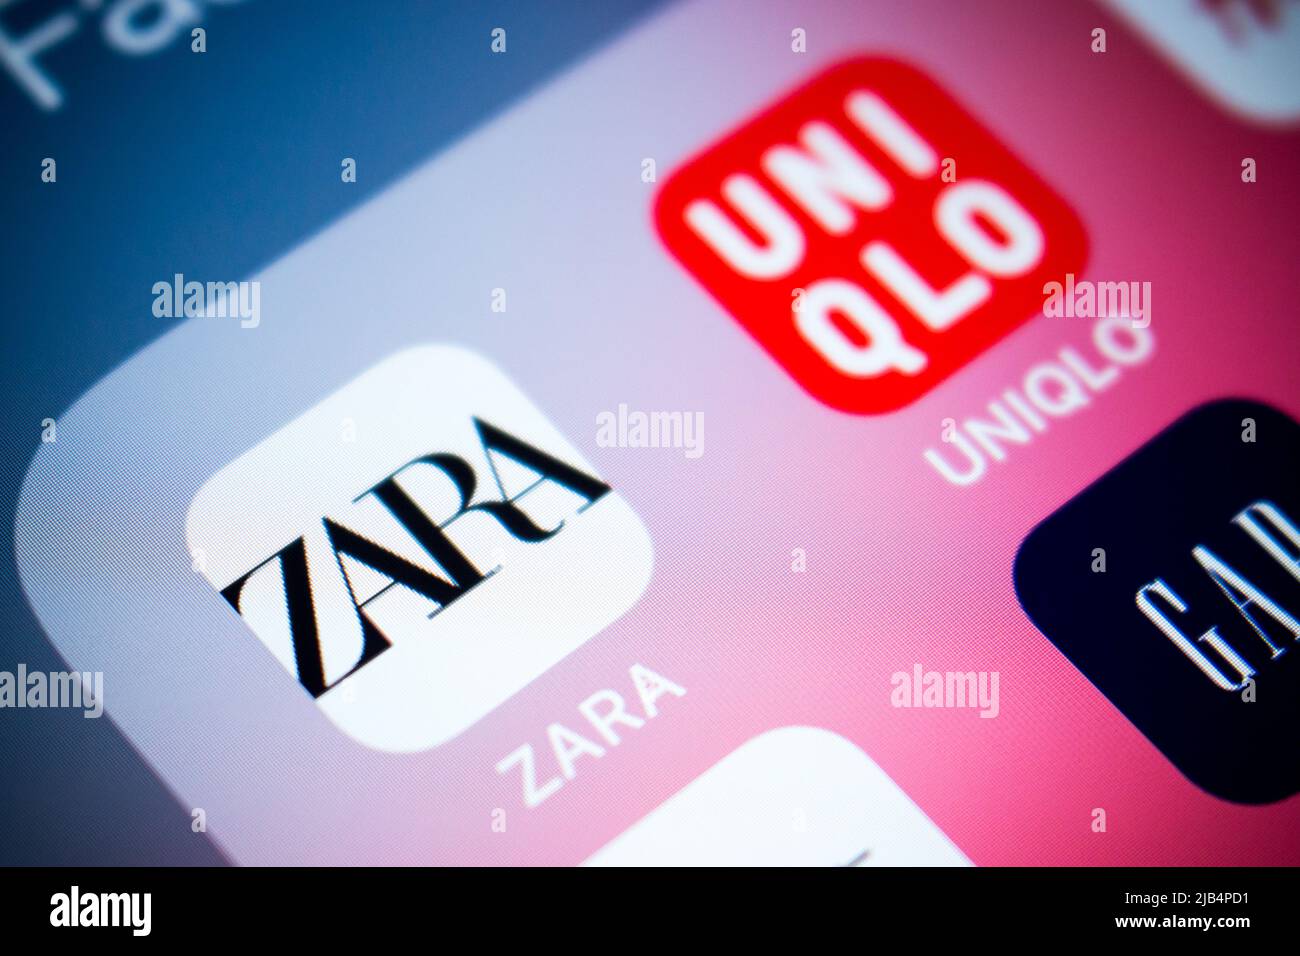 Logo von Zara, spanischer Bekleidungshändler mit Sitz in Galicien, auf iOS. Zara ist auf schnelle Mode spezialisiert, zu den Produkten gehören Kleidung und Accessoires Stockfoto